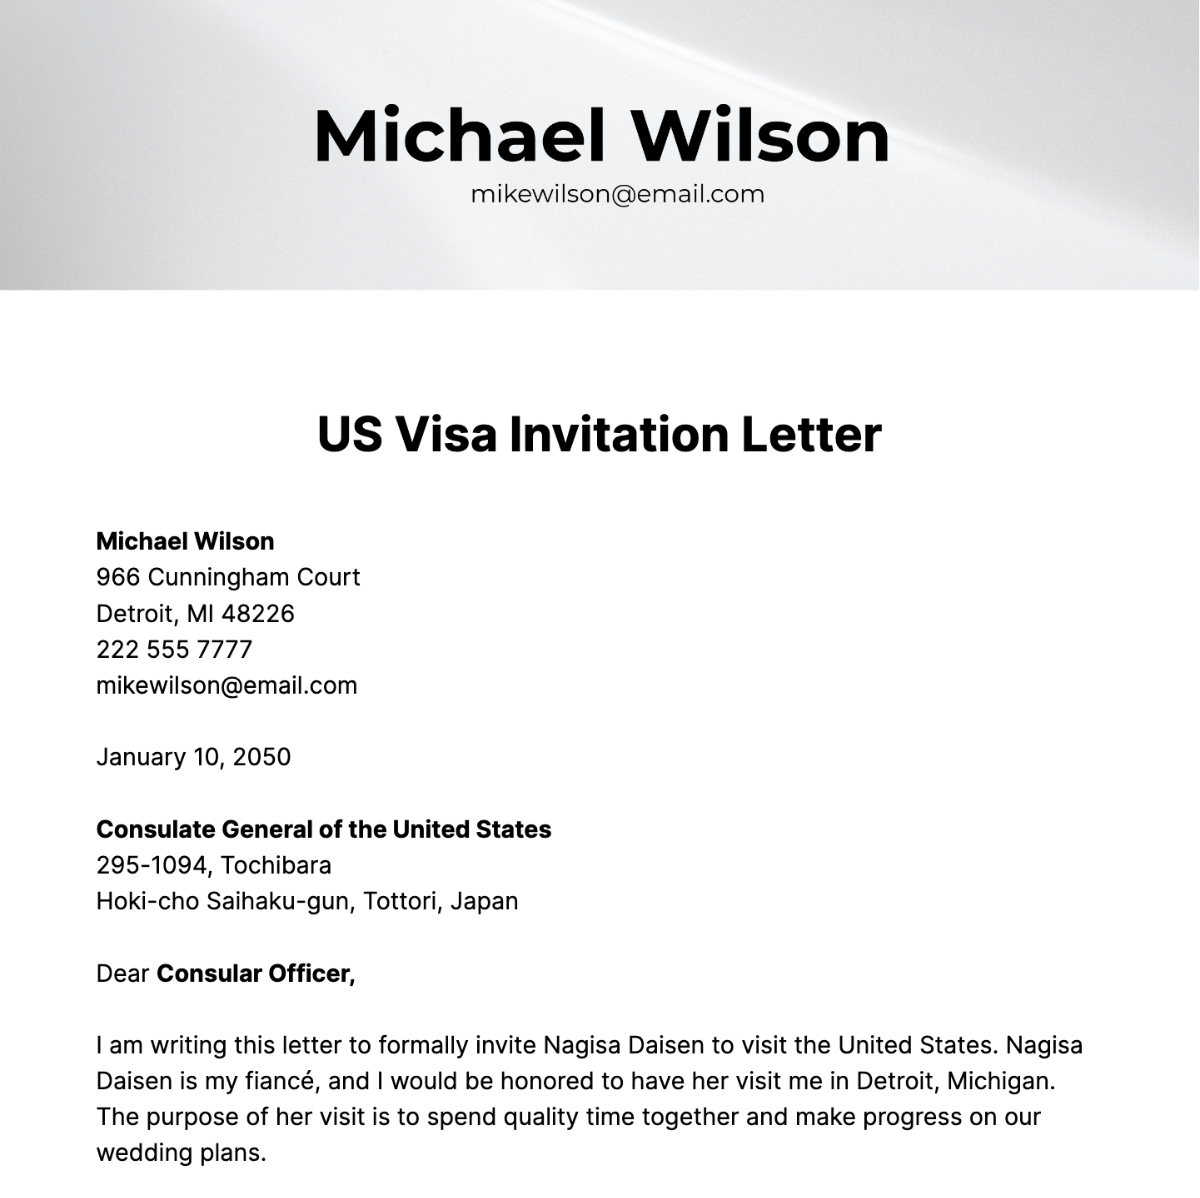 US Visa Invitation Letter Template